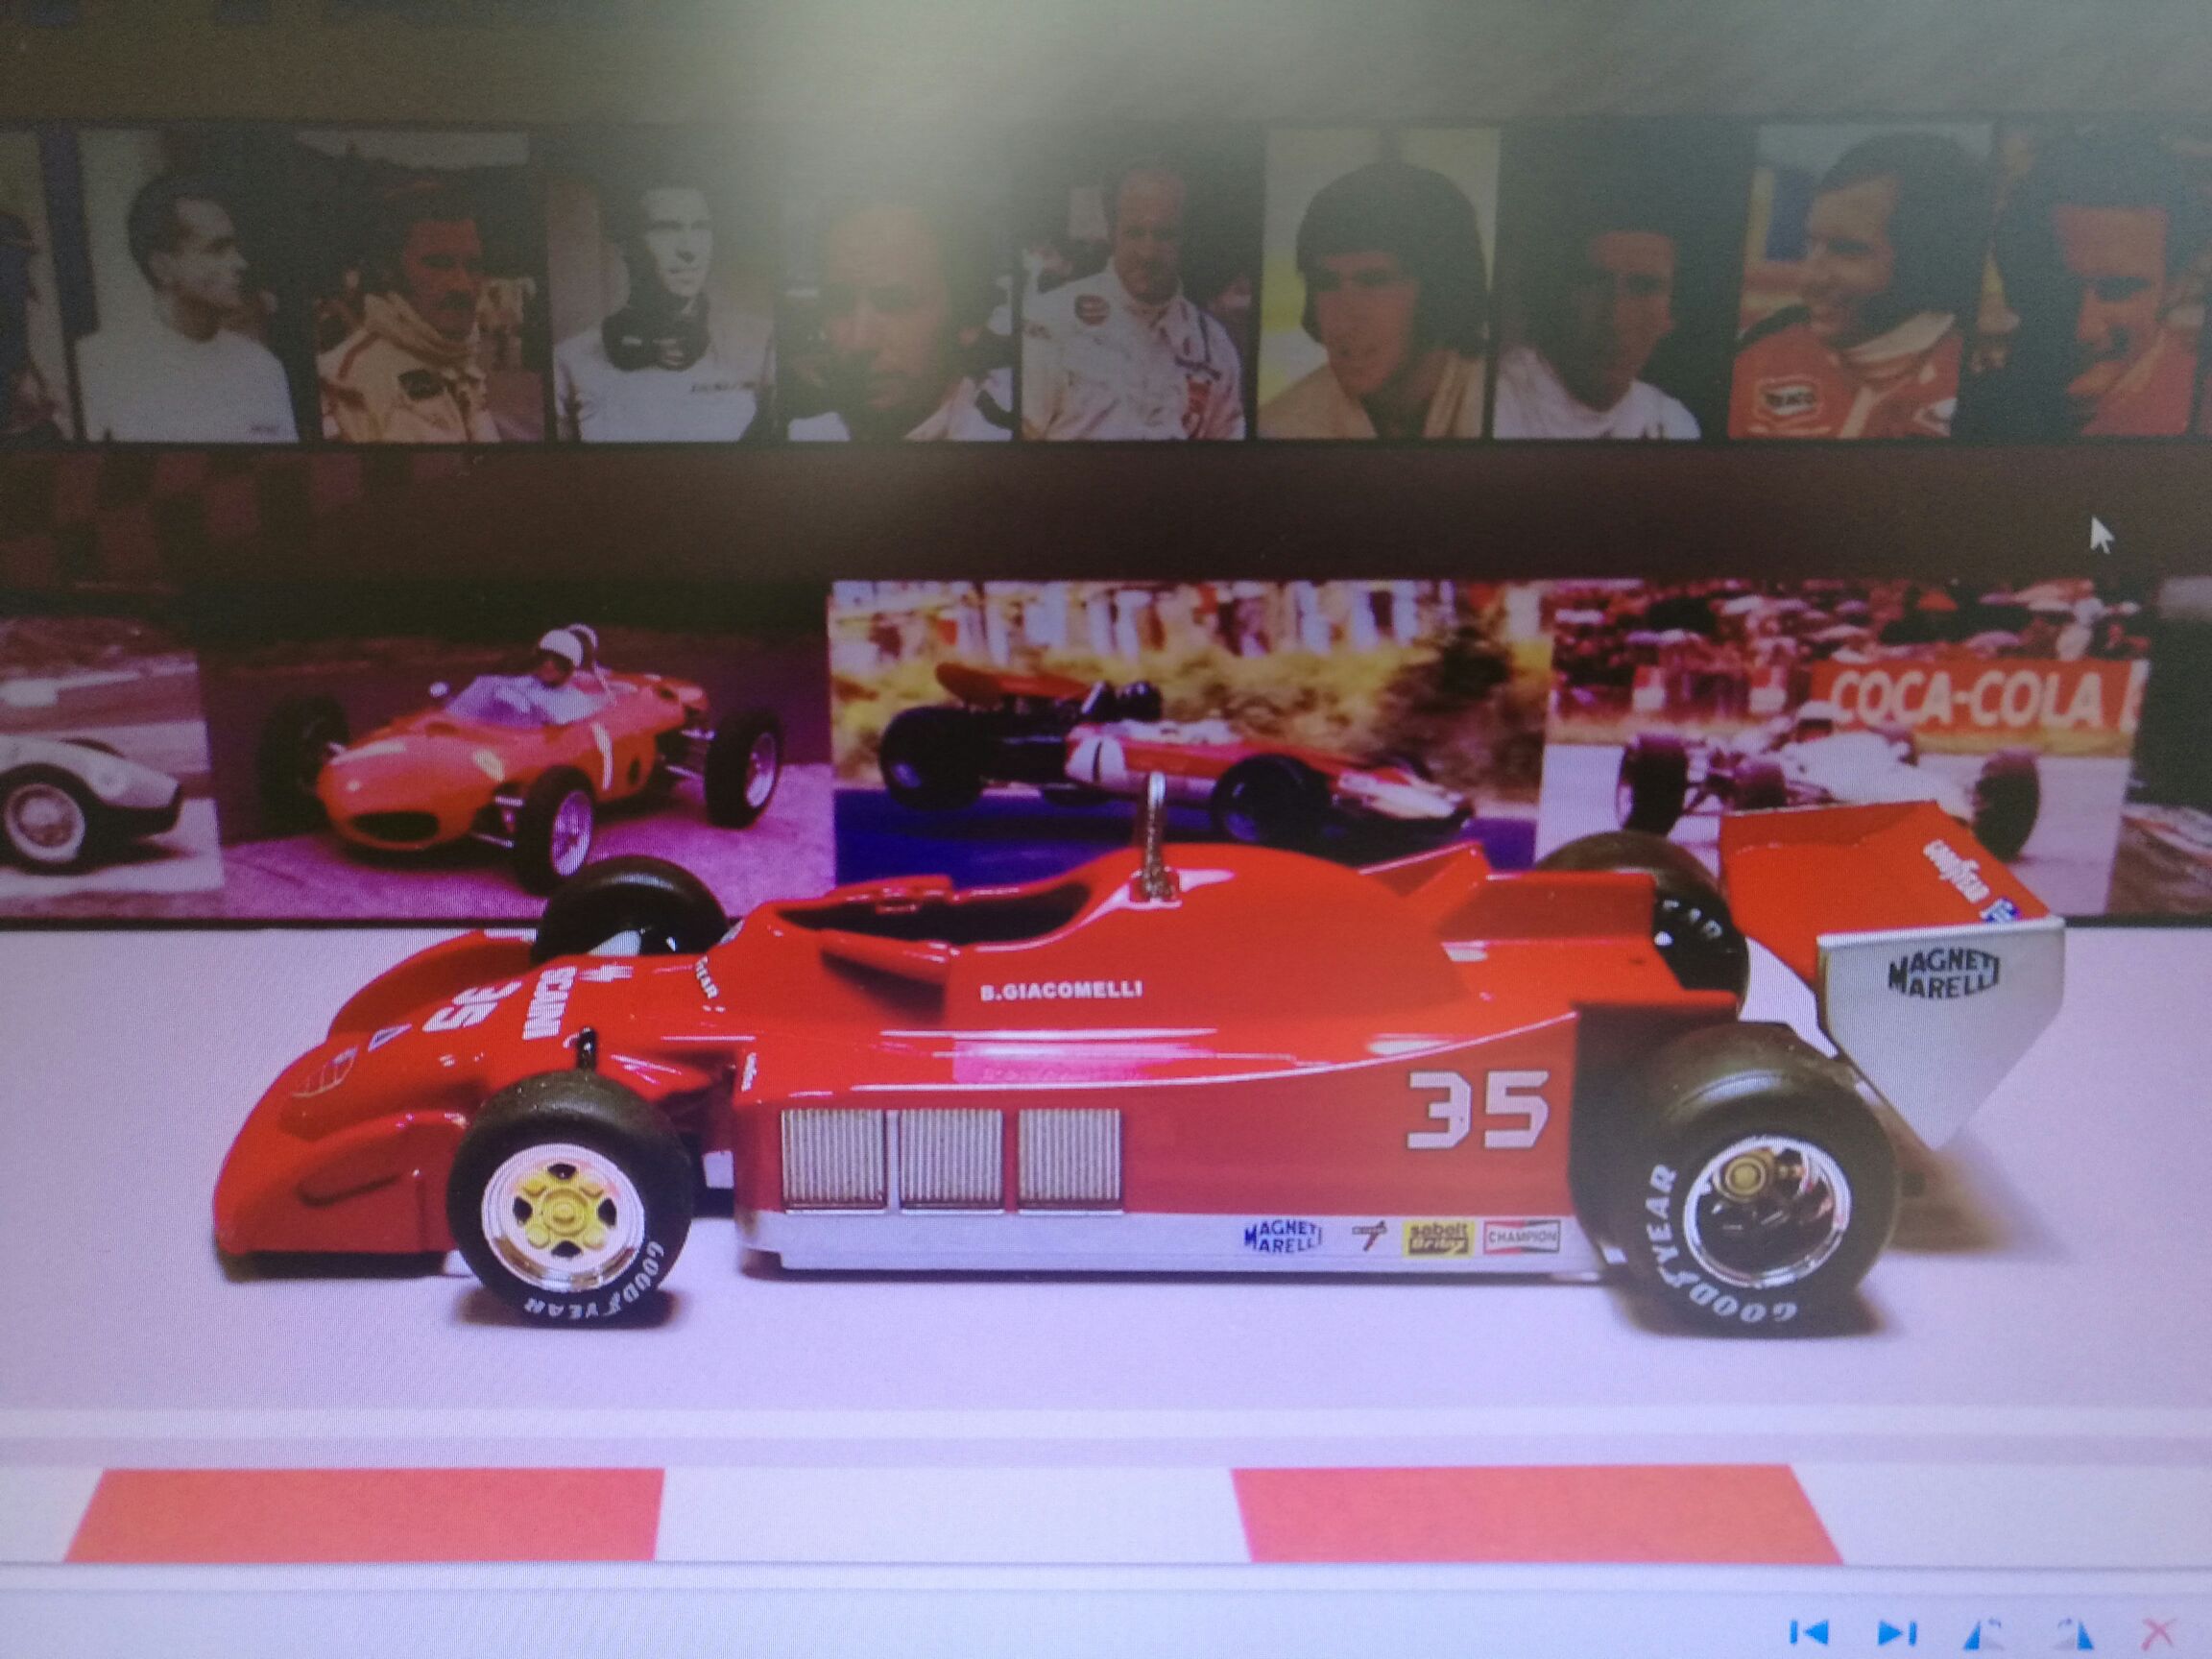 Alfa Romeo 177 - Formula 1 toy car collectible - Main Image 1